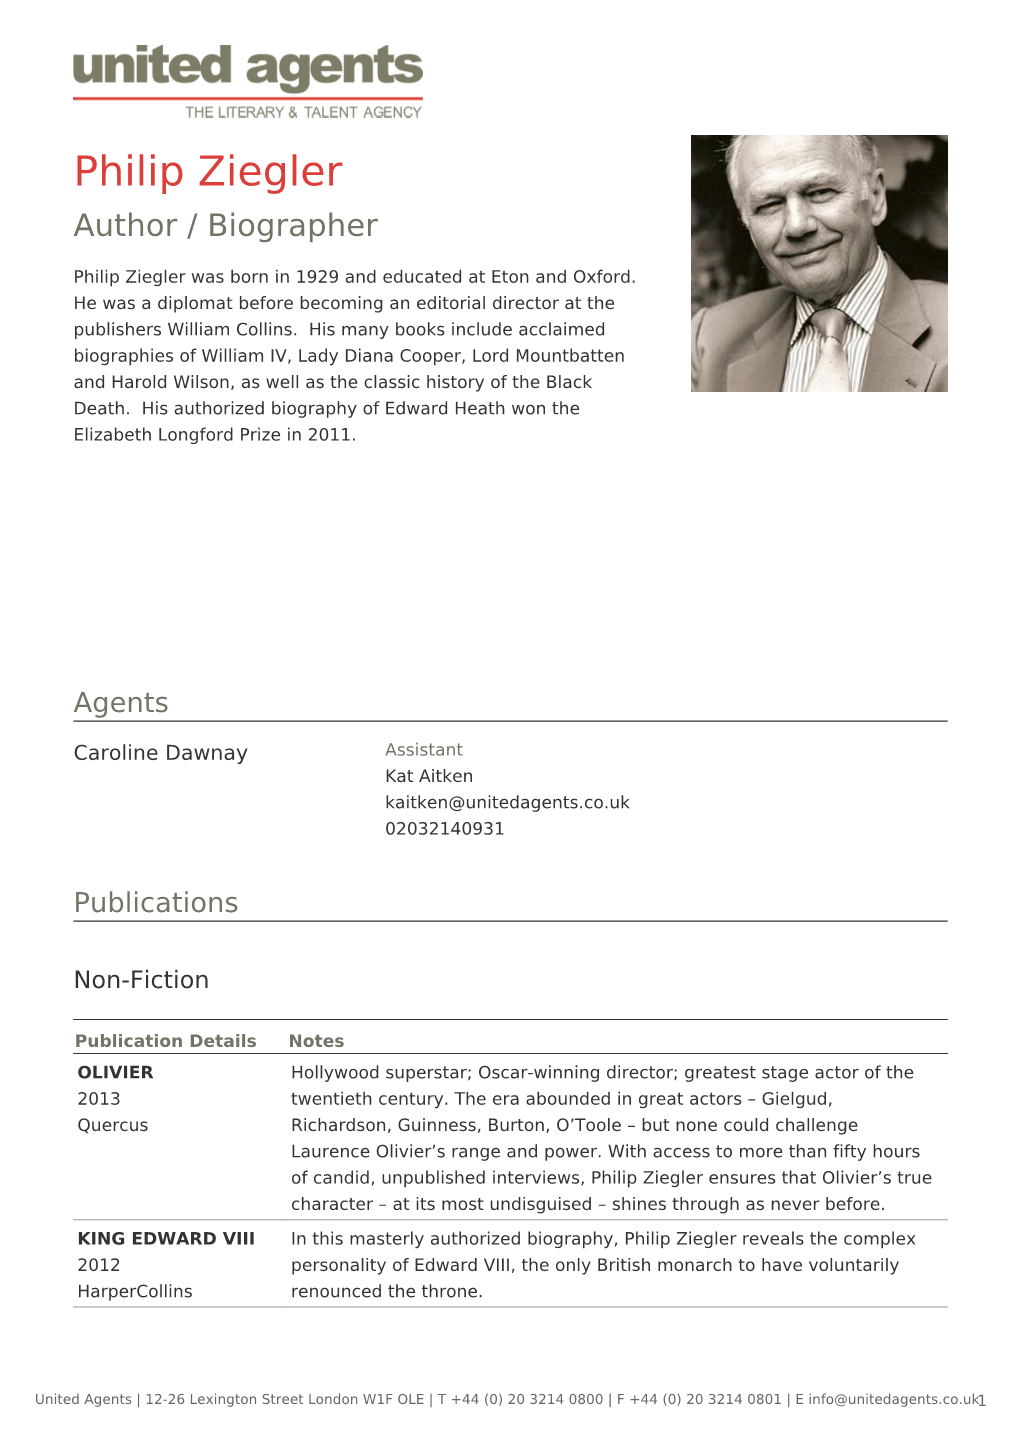 Philip Ziegler Author / Biographer